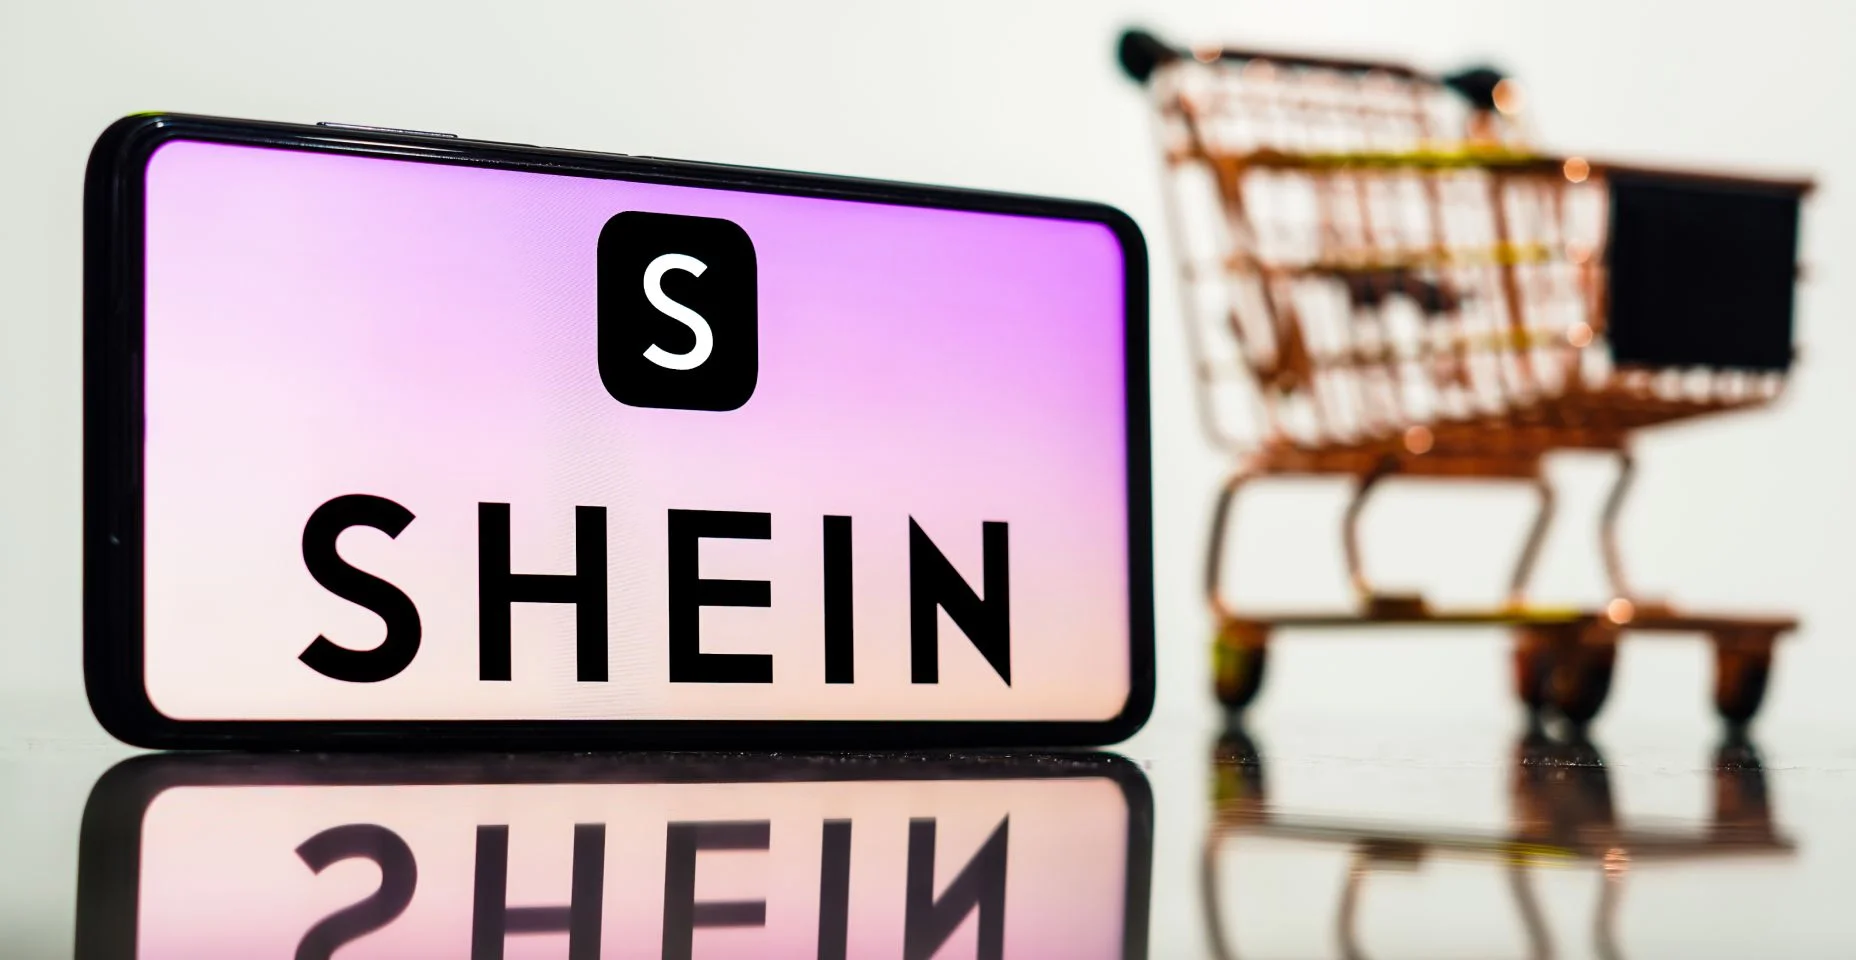 Nesta ilustração fotográfica, o logotipo da Shein é exibido em um smartphone junto com um carrinho de compras.